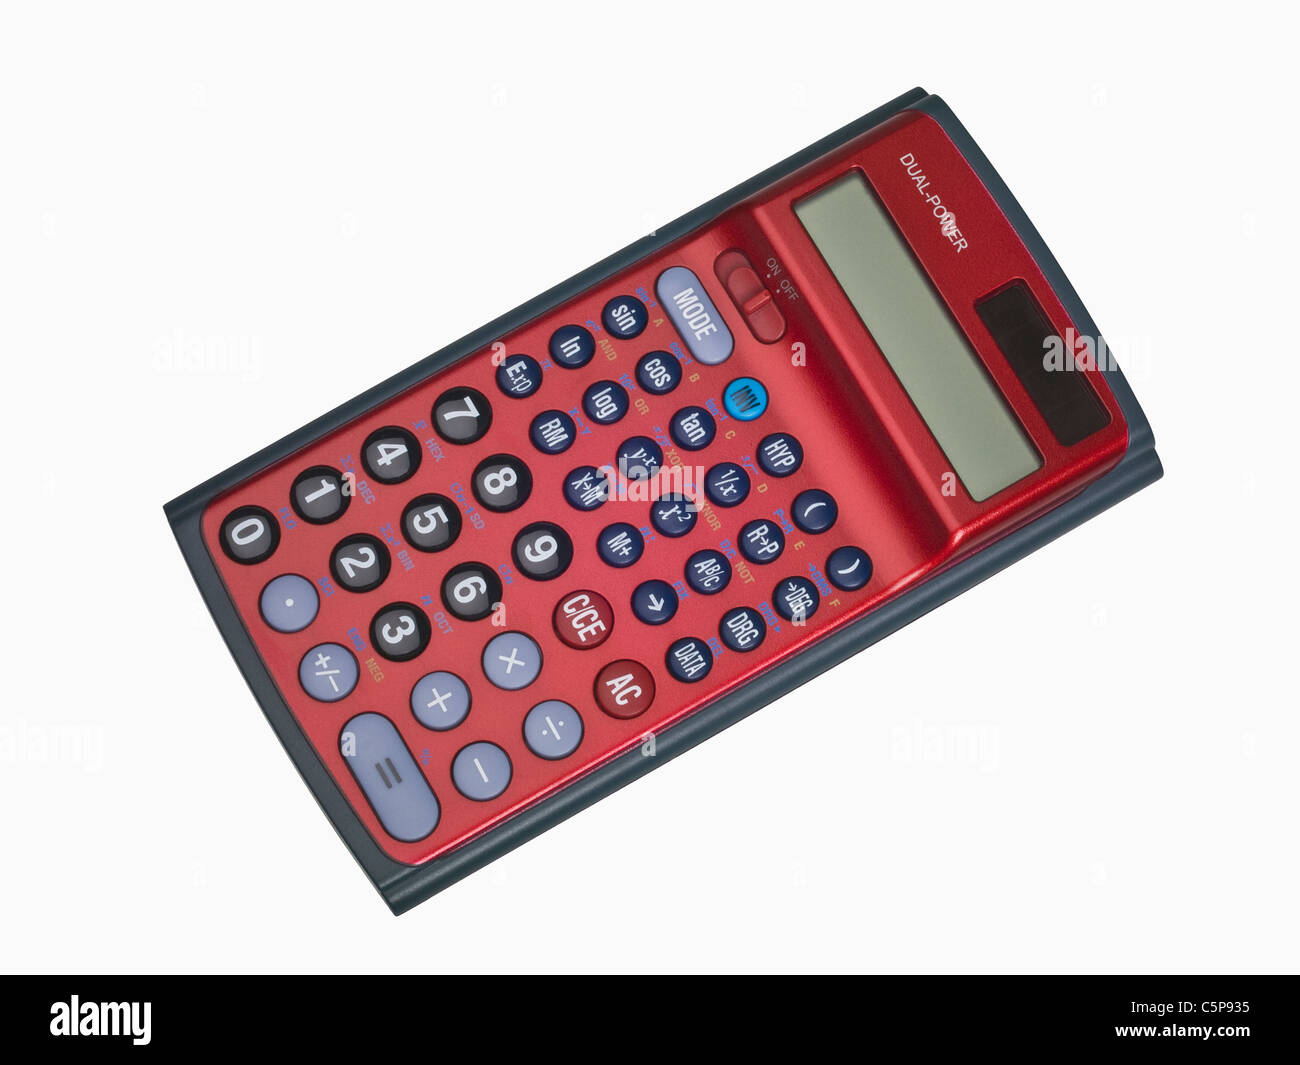 Detailansicht eines Taschenrechners | Detail photo of a pocket calculator Stock Photo